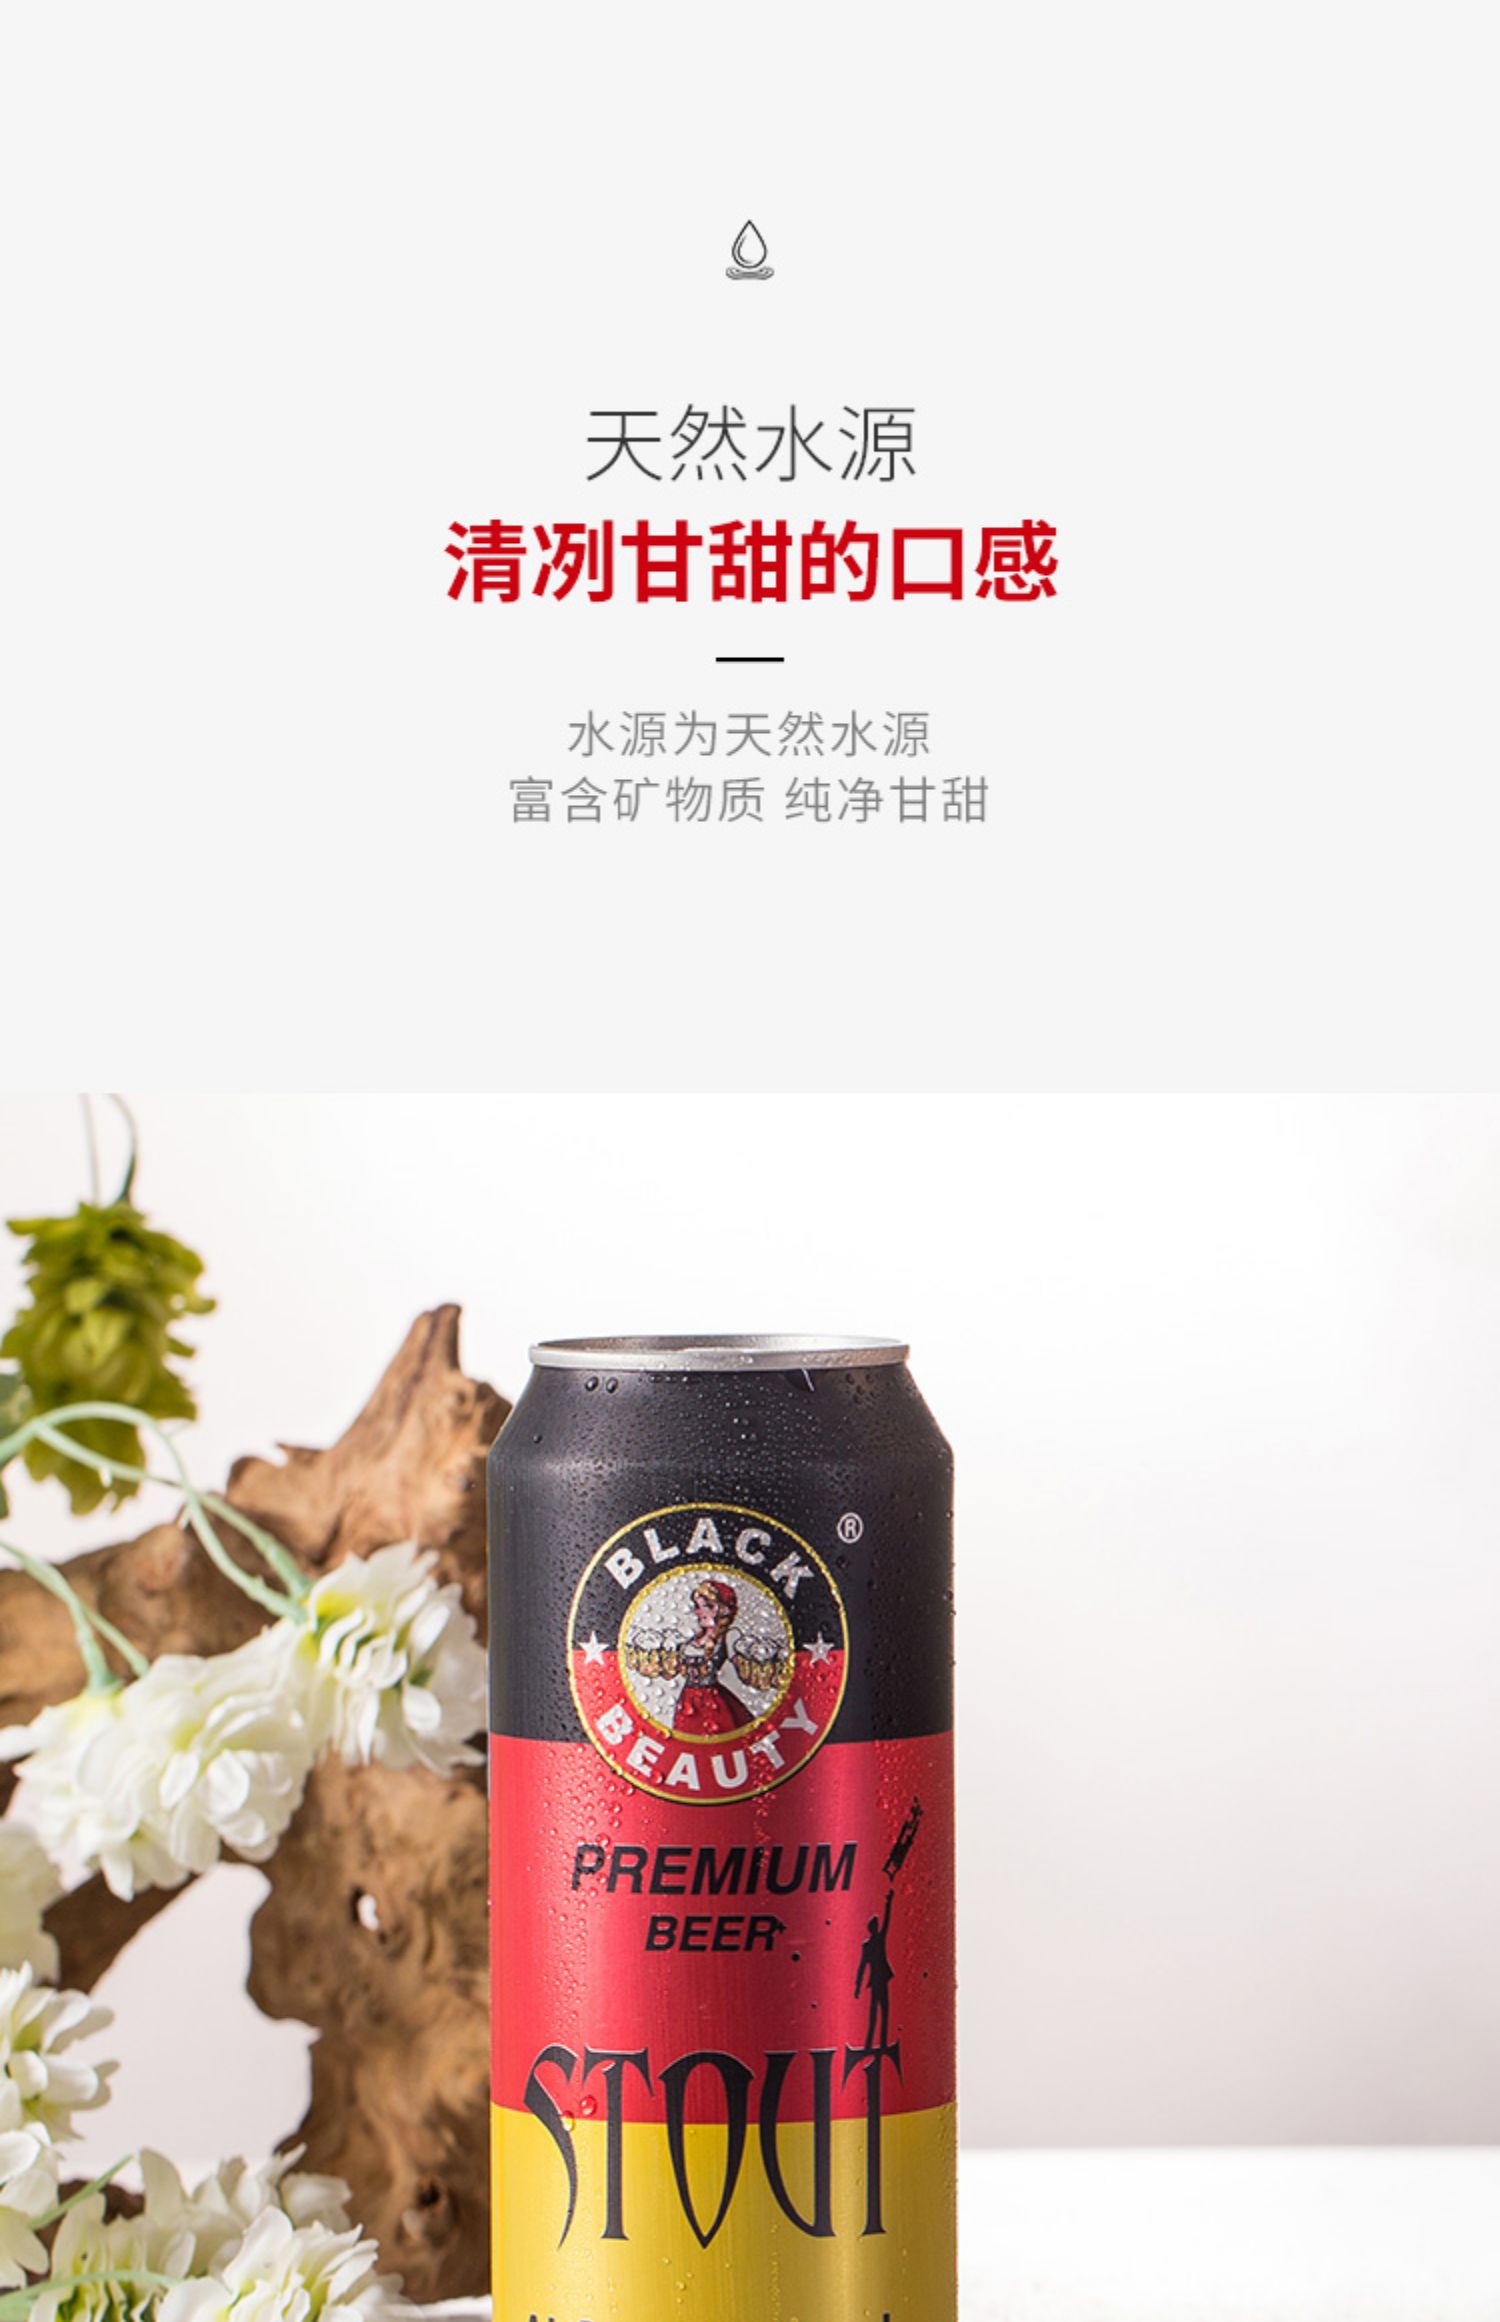 【黑美人】德国精酿黑啤酒500ml*6罐